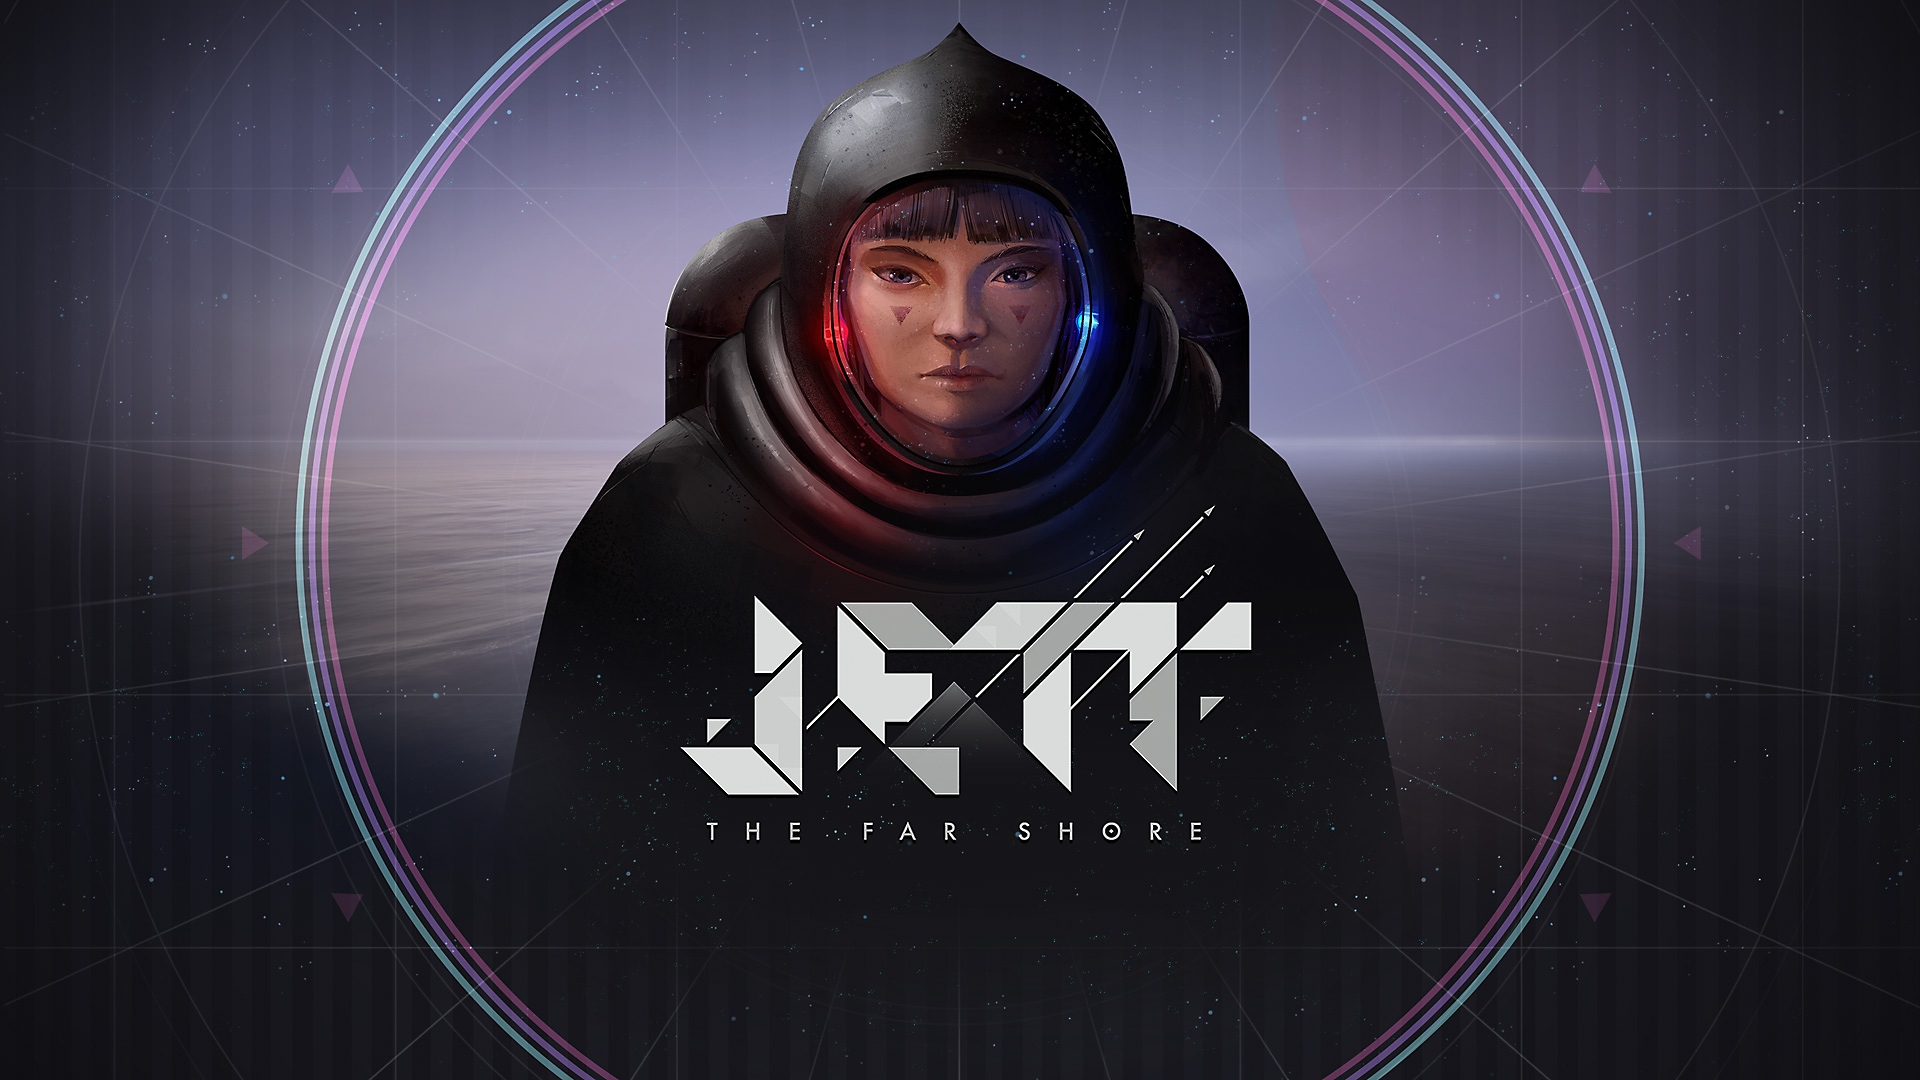 Jett: The Far Shore – key art